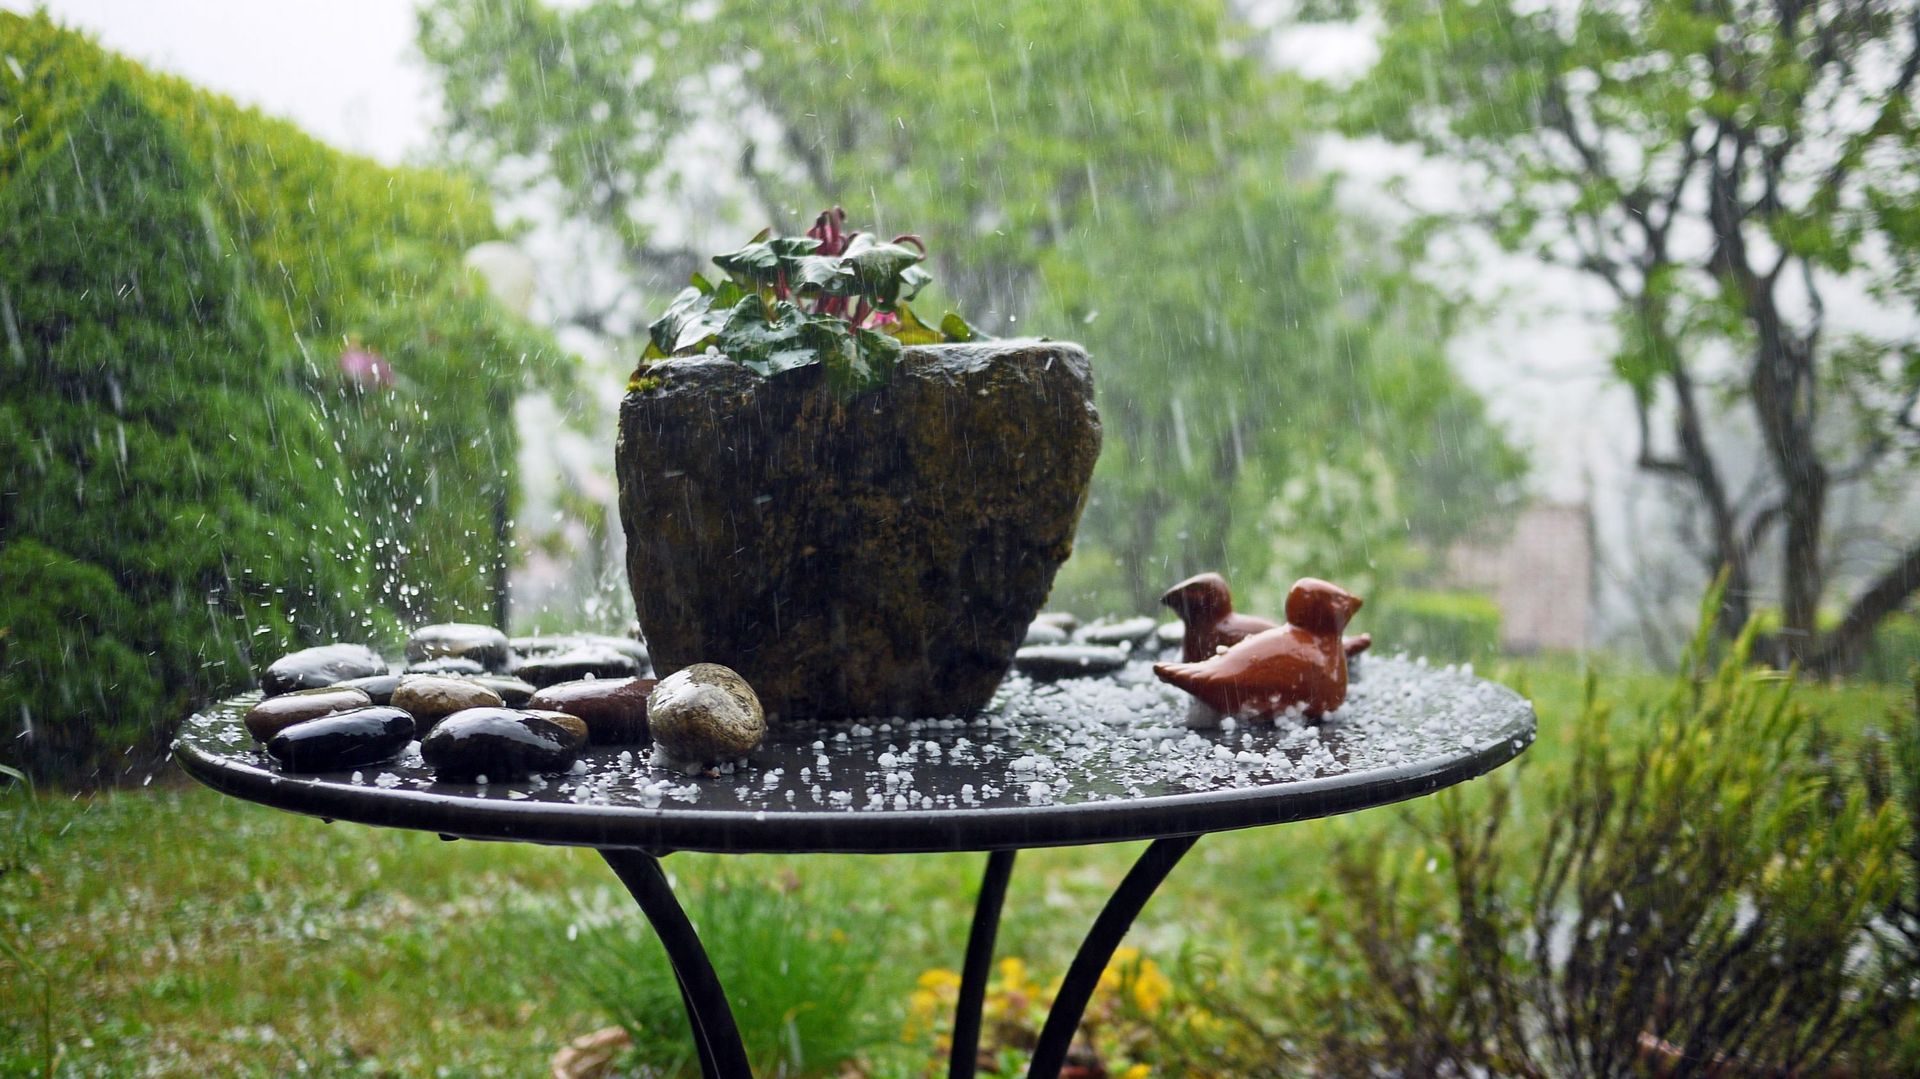 Après de fortes pluies, il est utile d’inspecter les pots présents au jardin. Si les racines des plantes restent baignées dans un excès d’eau, elles risquent de pourrir rapidement.